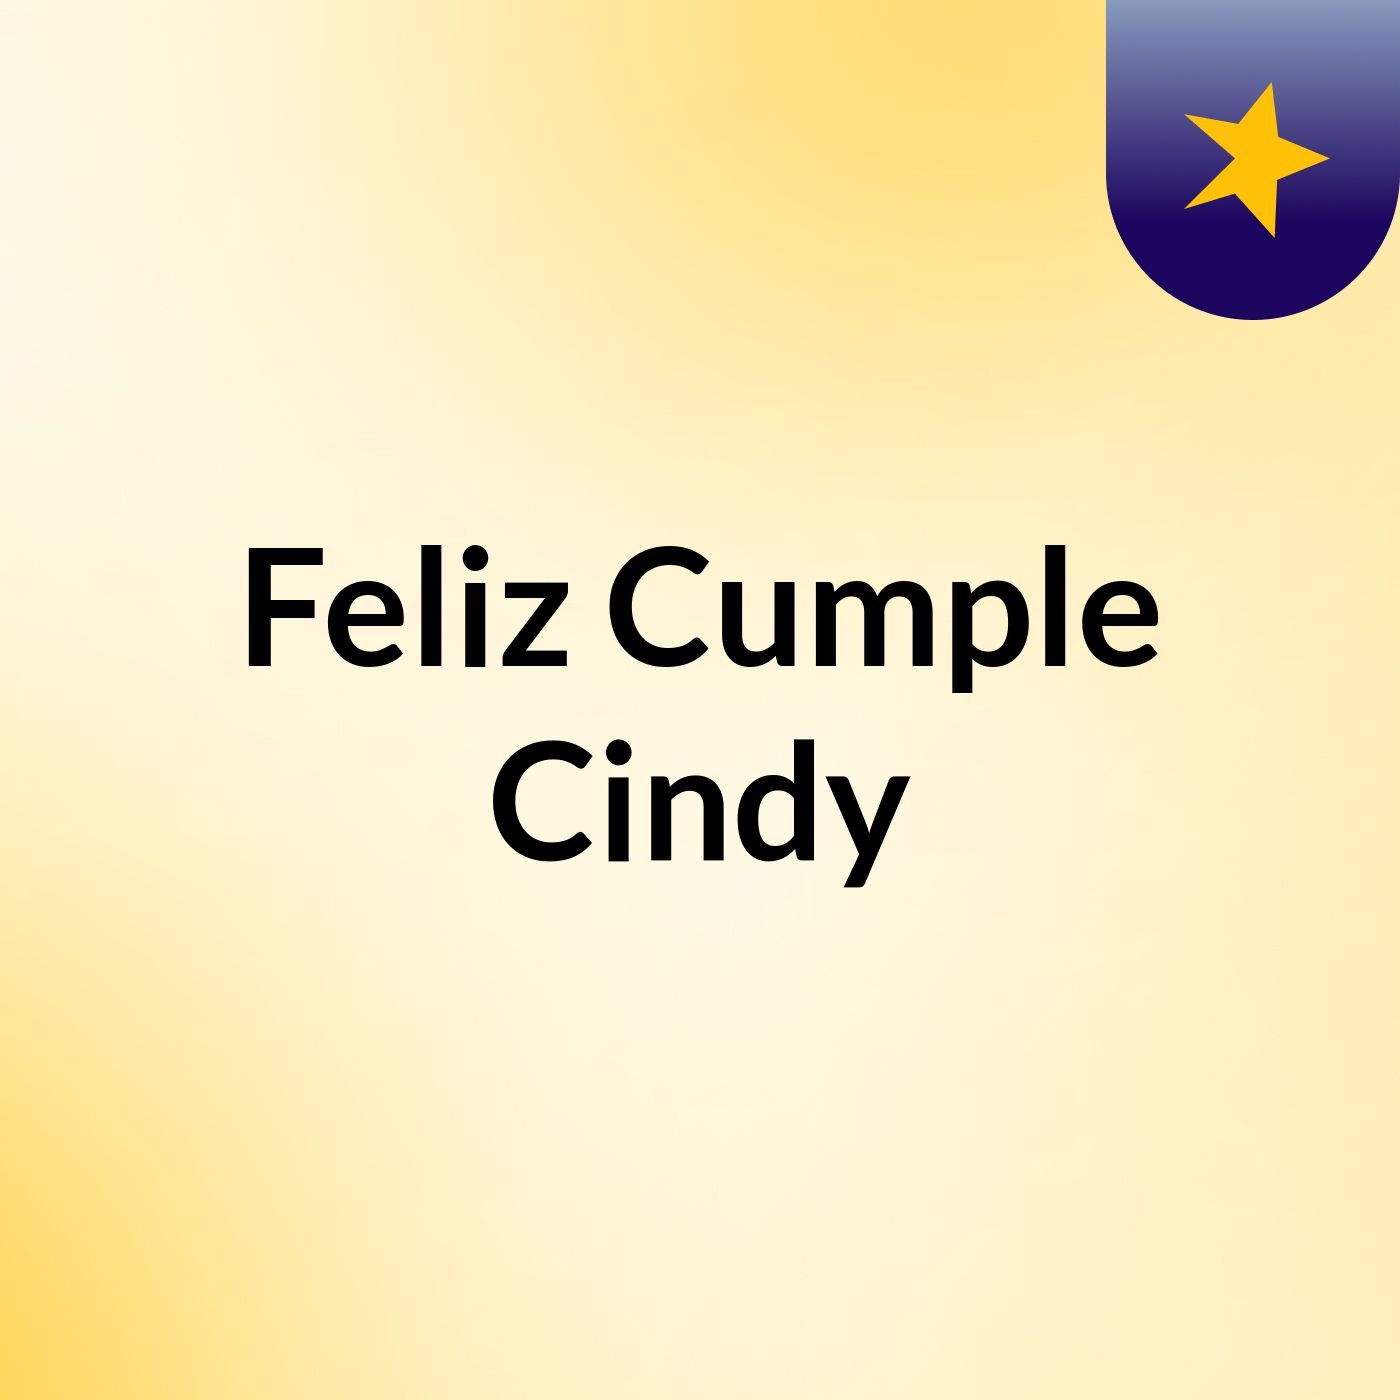 Feliz Cumple Cindy